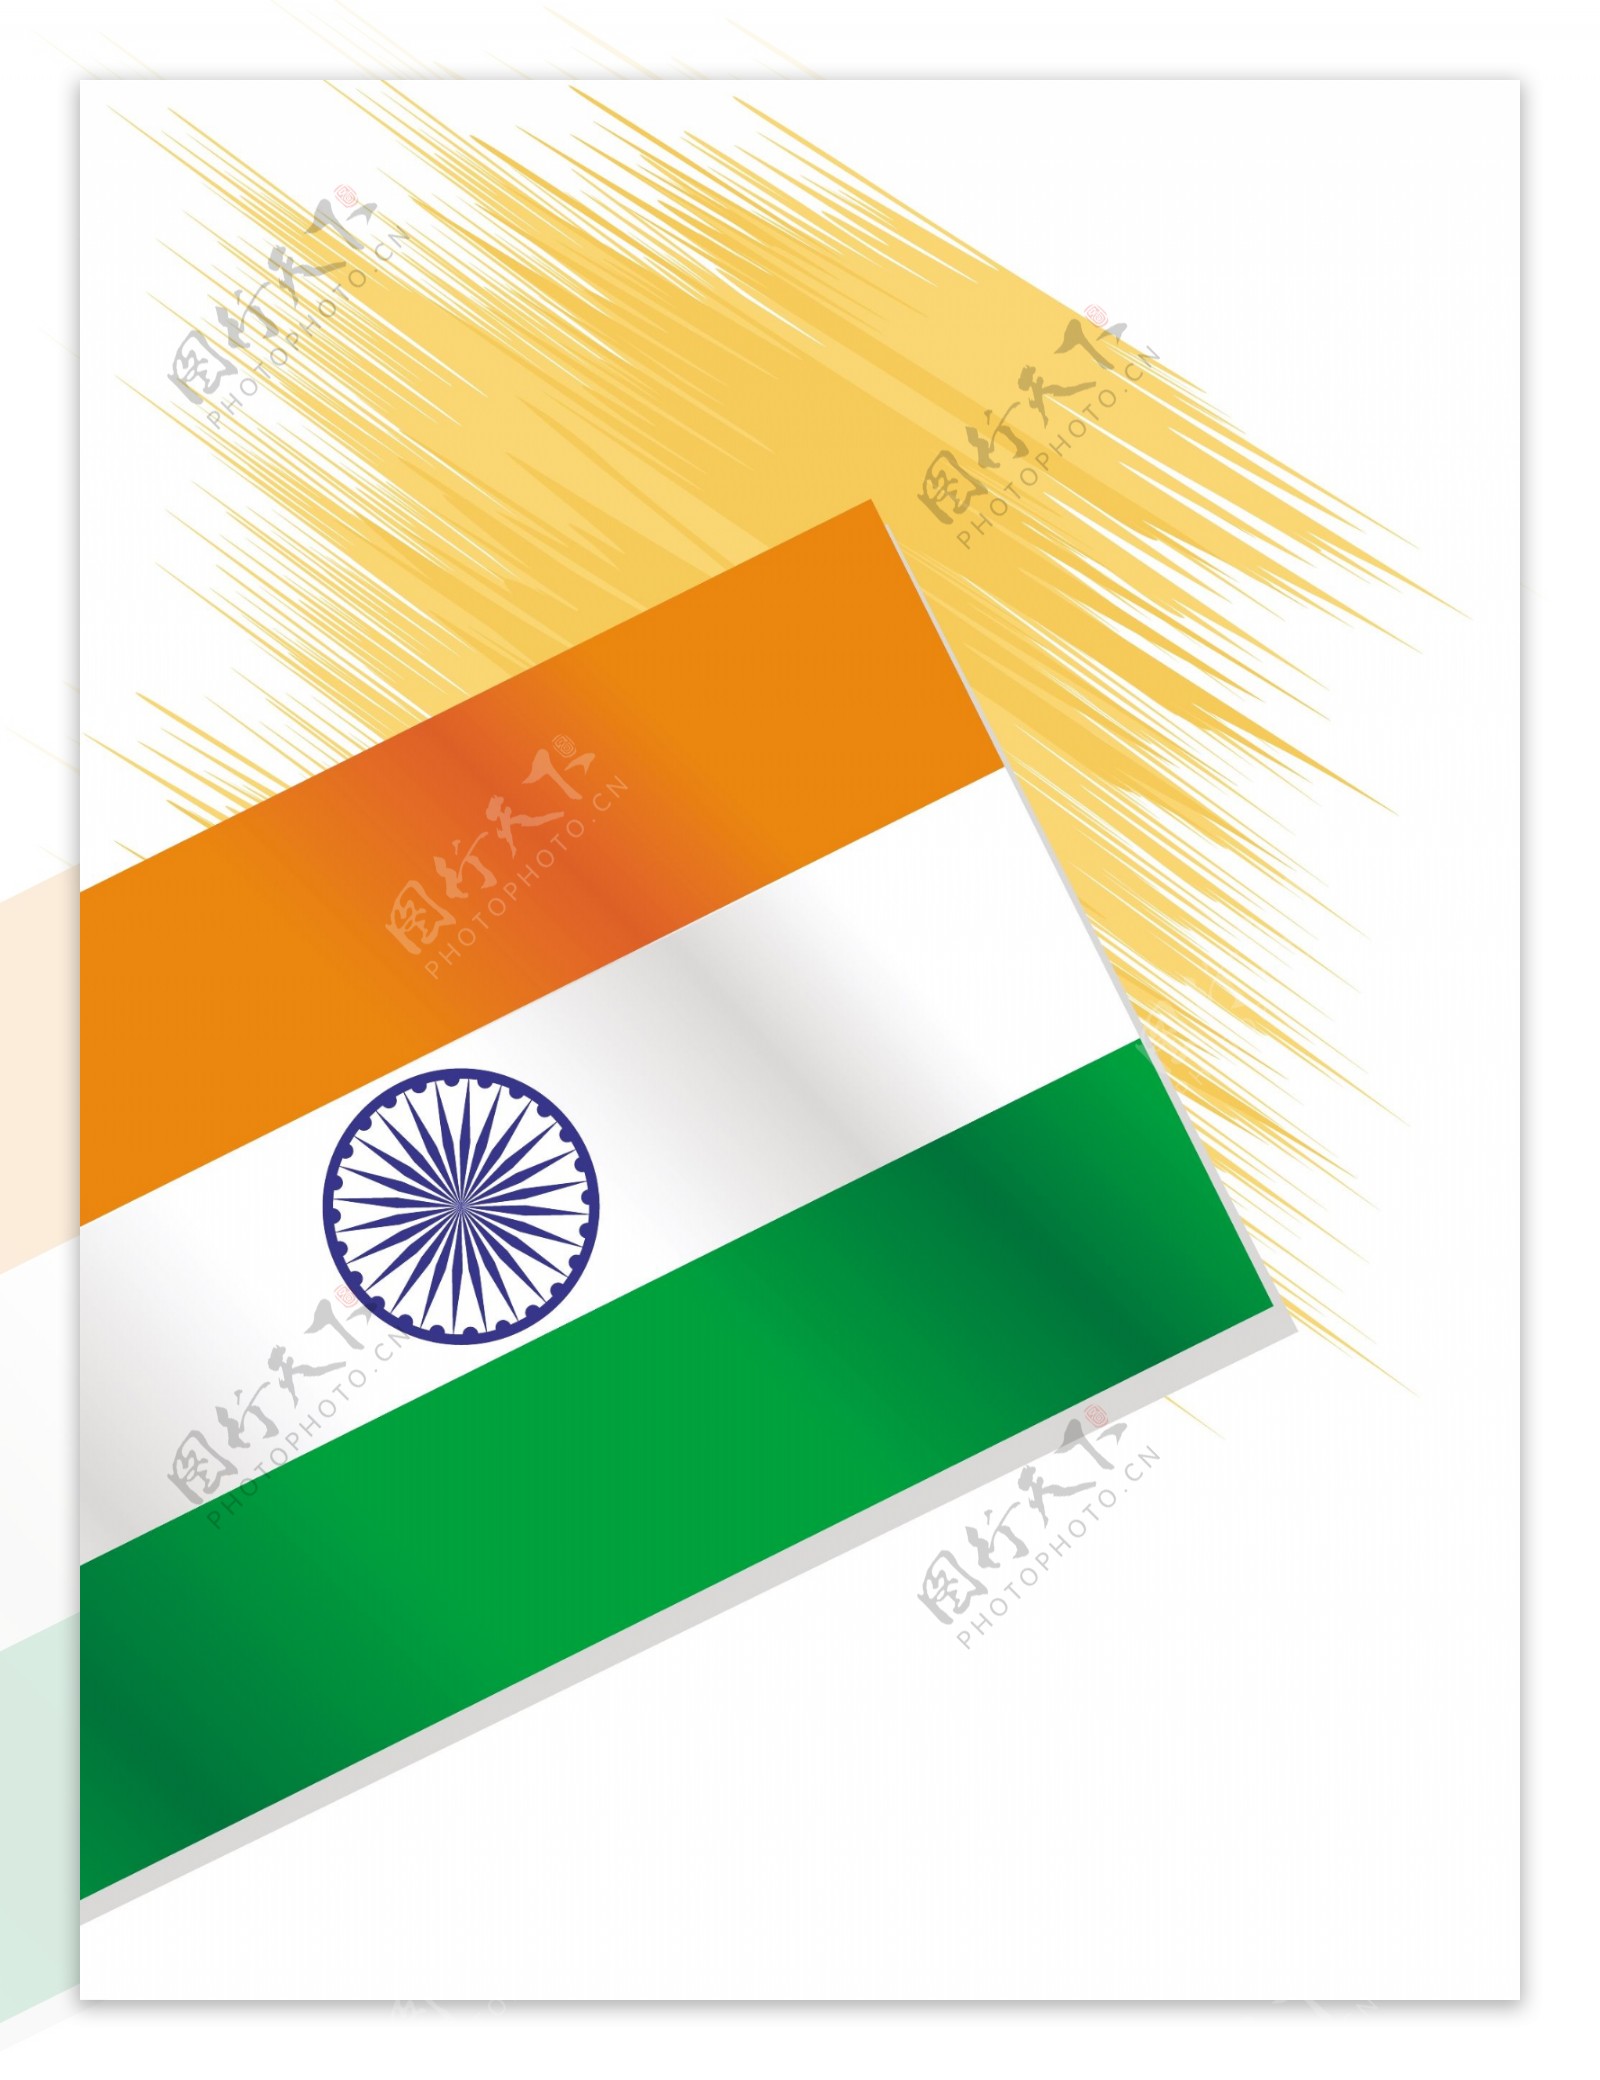 说明印度国旗